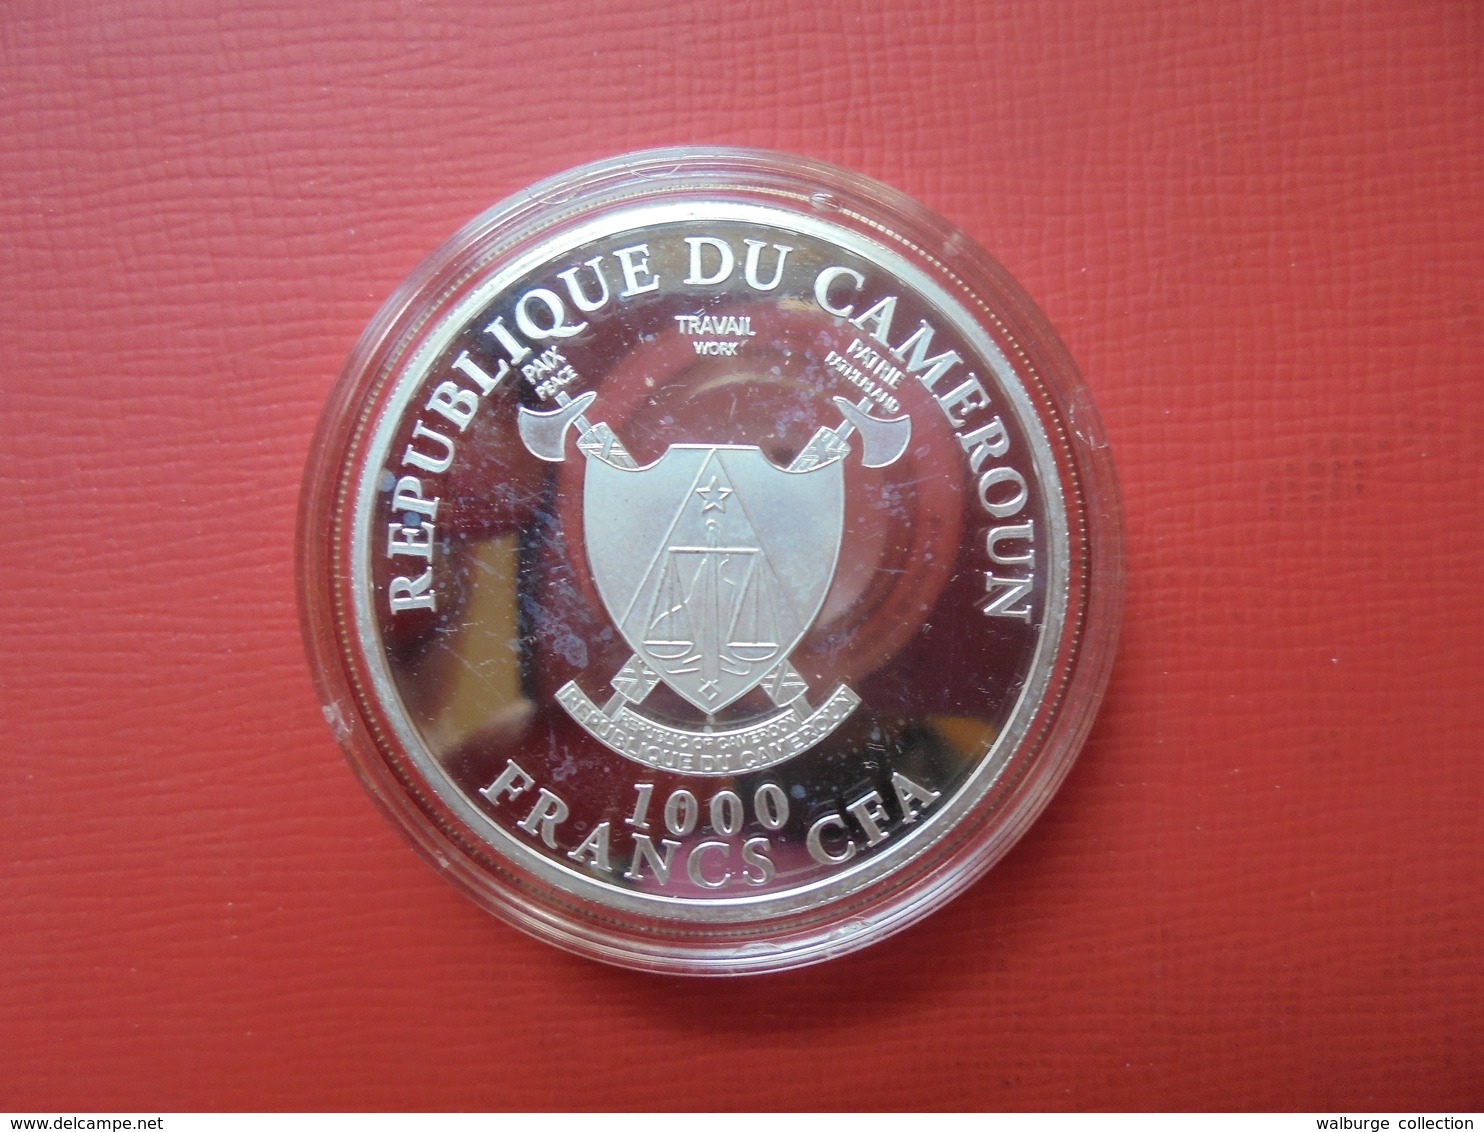 CAMEROUN 1000 FRANCS 2014 1 ONCE SILVER 999 - Cameroun